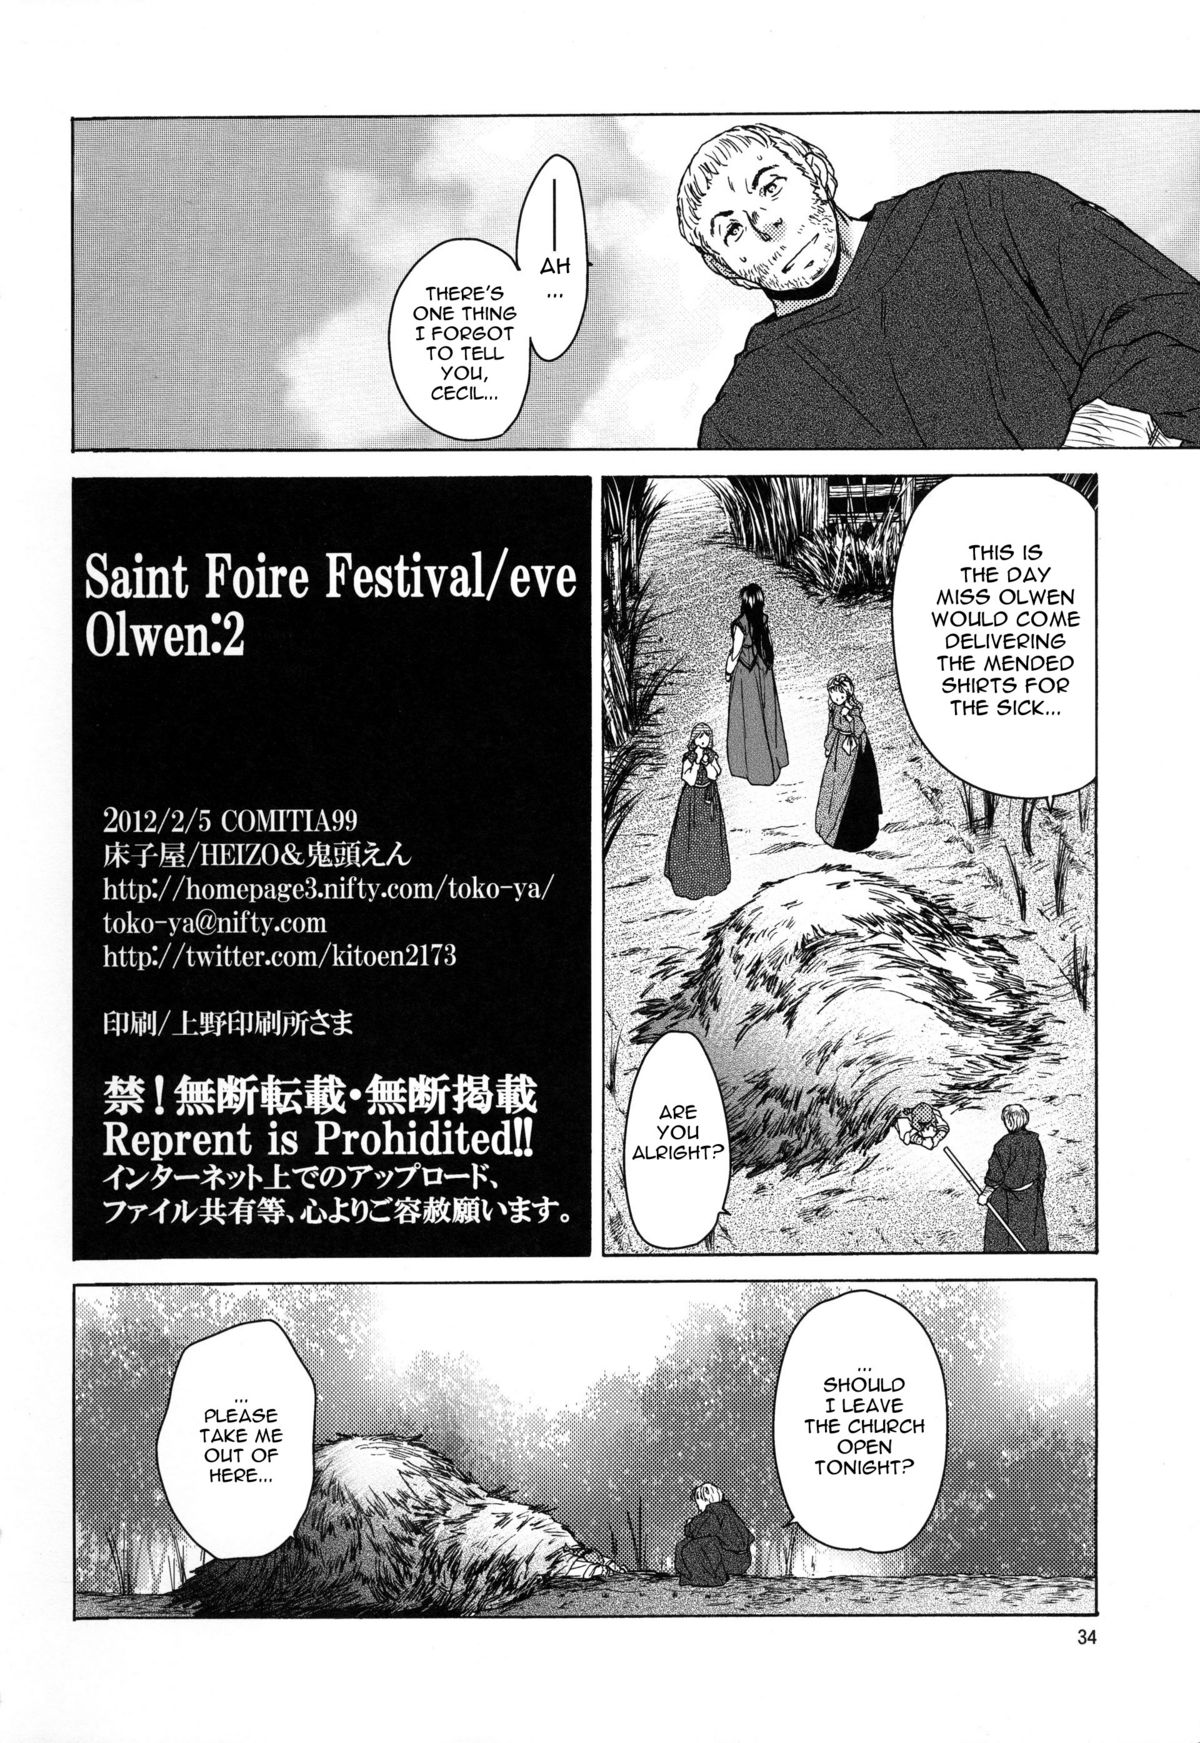 [床子屋 (HEIZO, 鬼頭えん)] Saint Foire Festival/eve Olwen:2 [英訳]